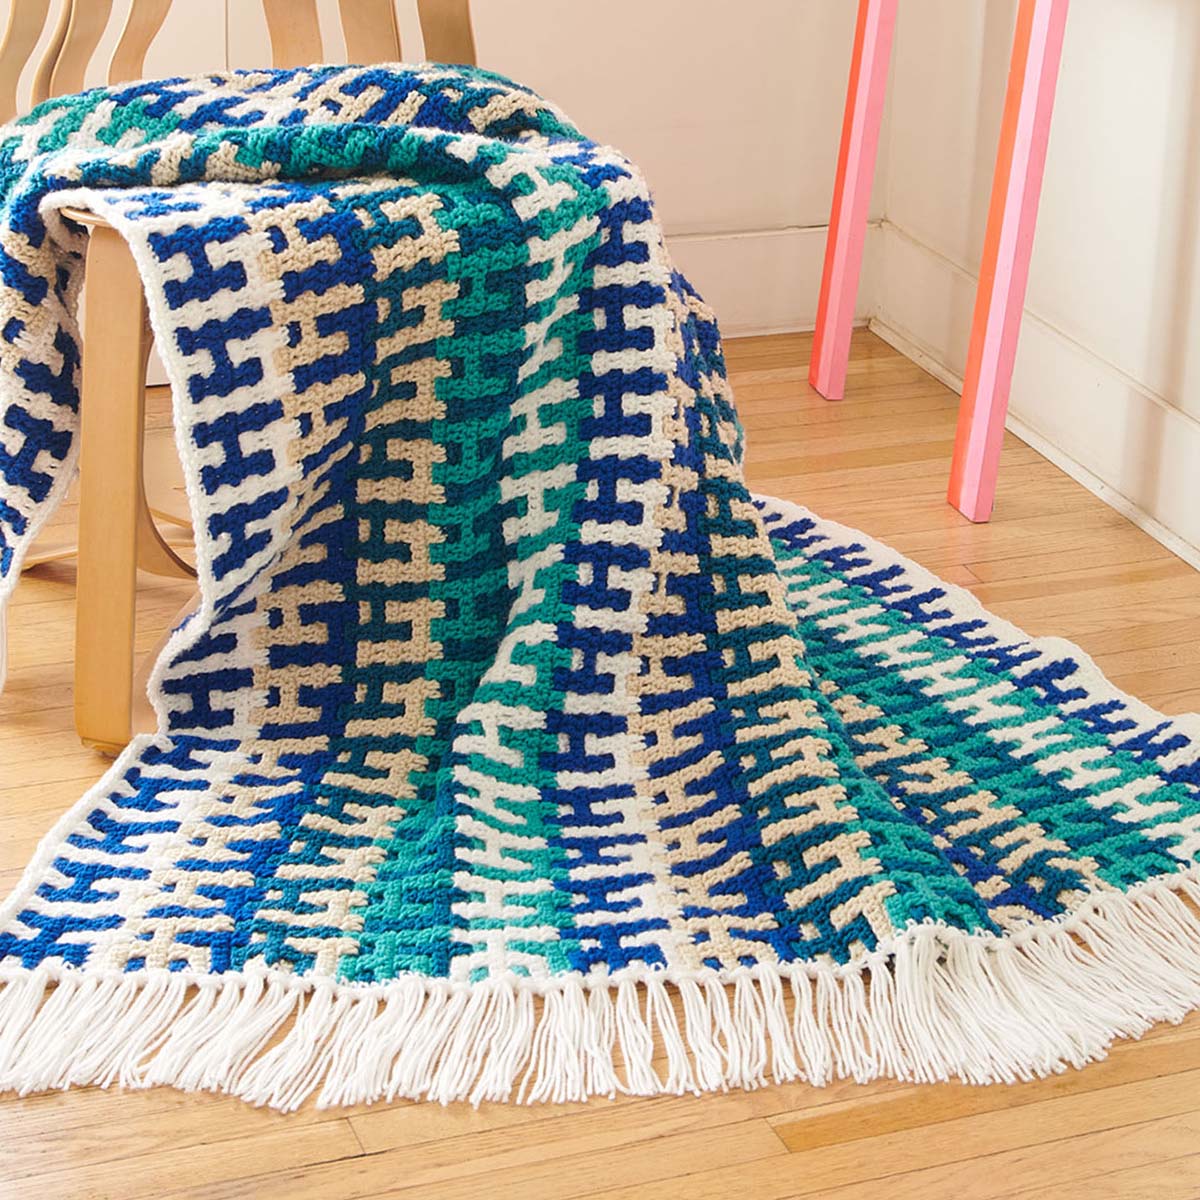 Caron® Frenetic Stripes Mosaic Blanket Crochet Kit